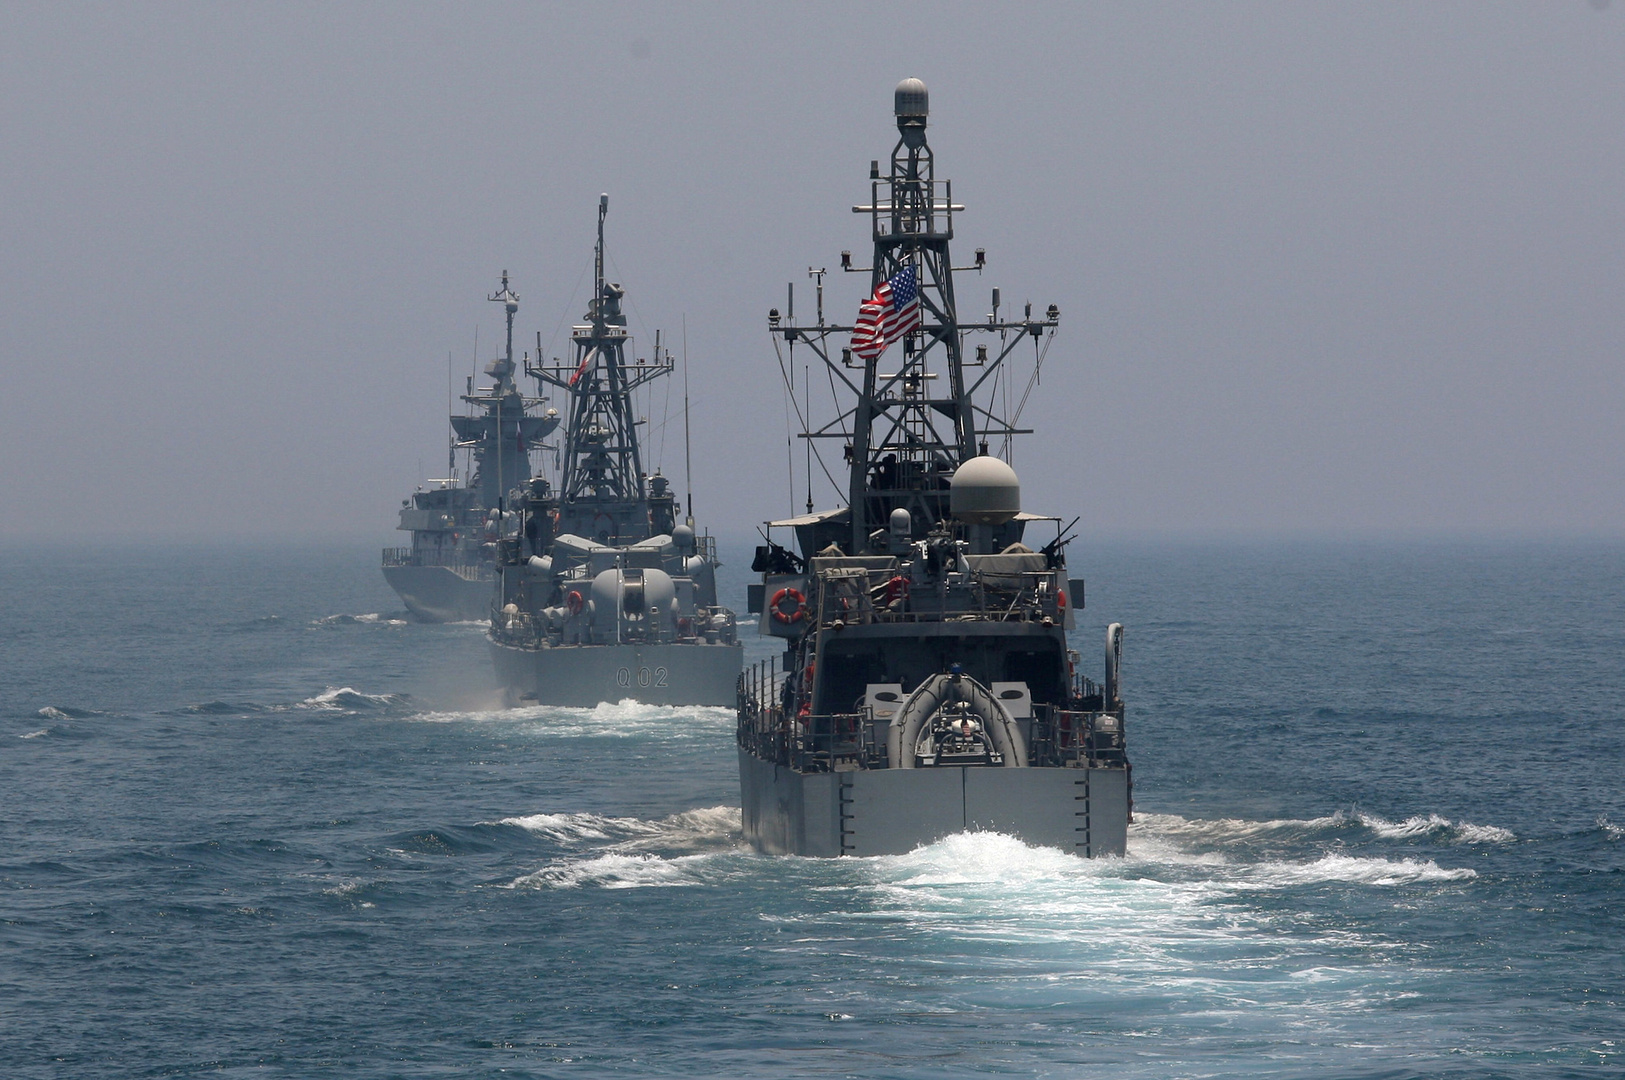 الولايات المتحدة تصدر تحذيرا من الاقتراب من سفنها في الخليج ومضيق هرمز بمسافة أقل من 100 متر